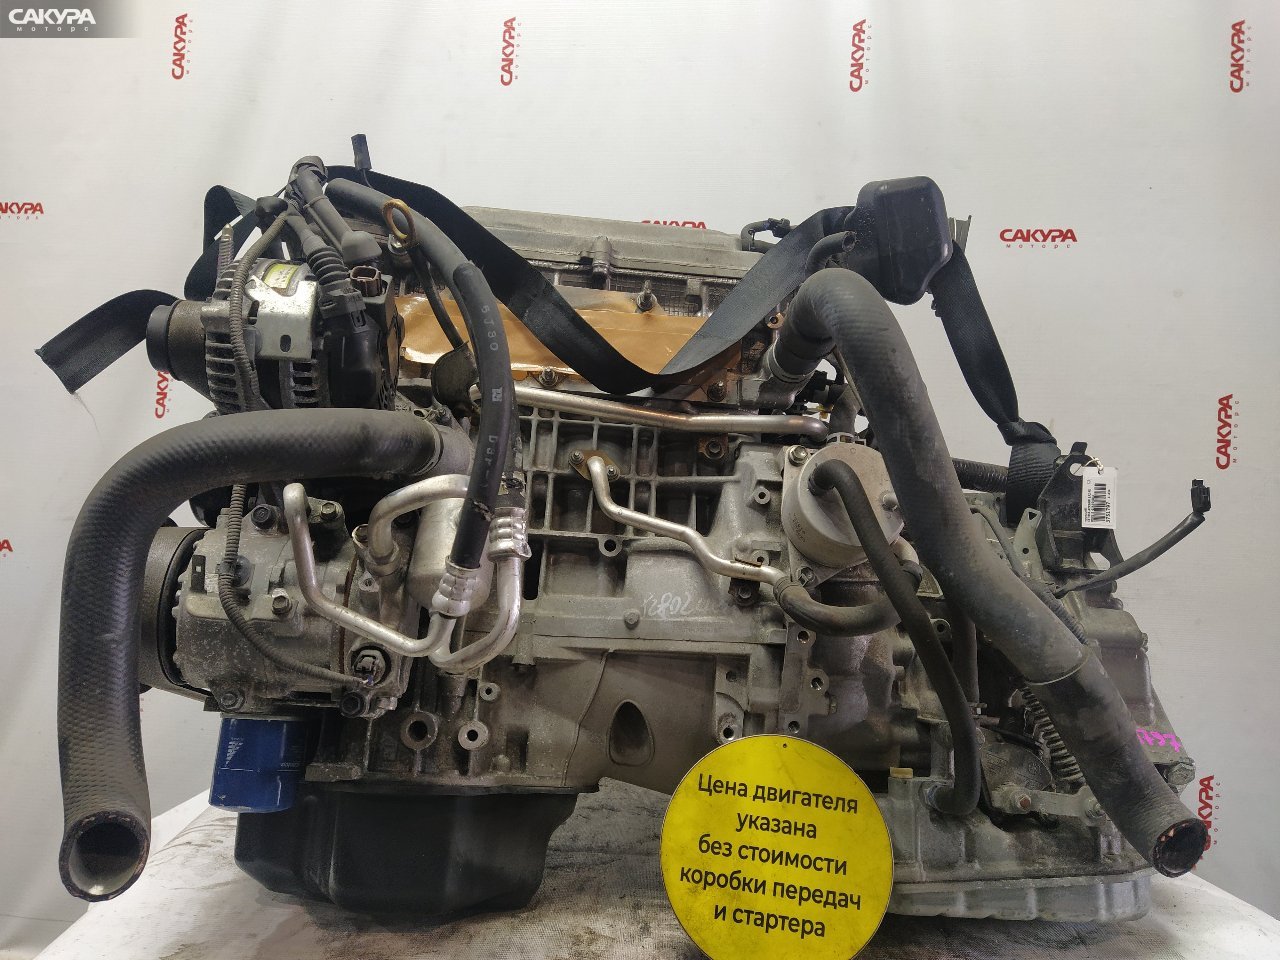 Двигатель Toyota Estima ACR50W 2AZ-FE: купить в Сакура Красноярск.